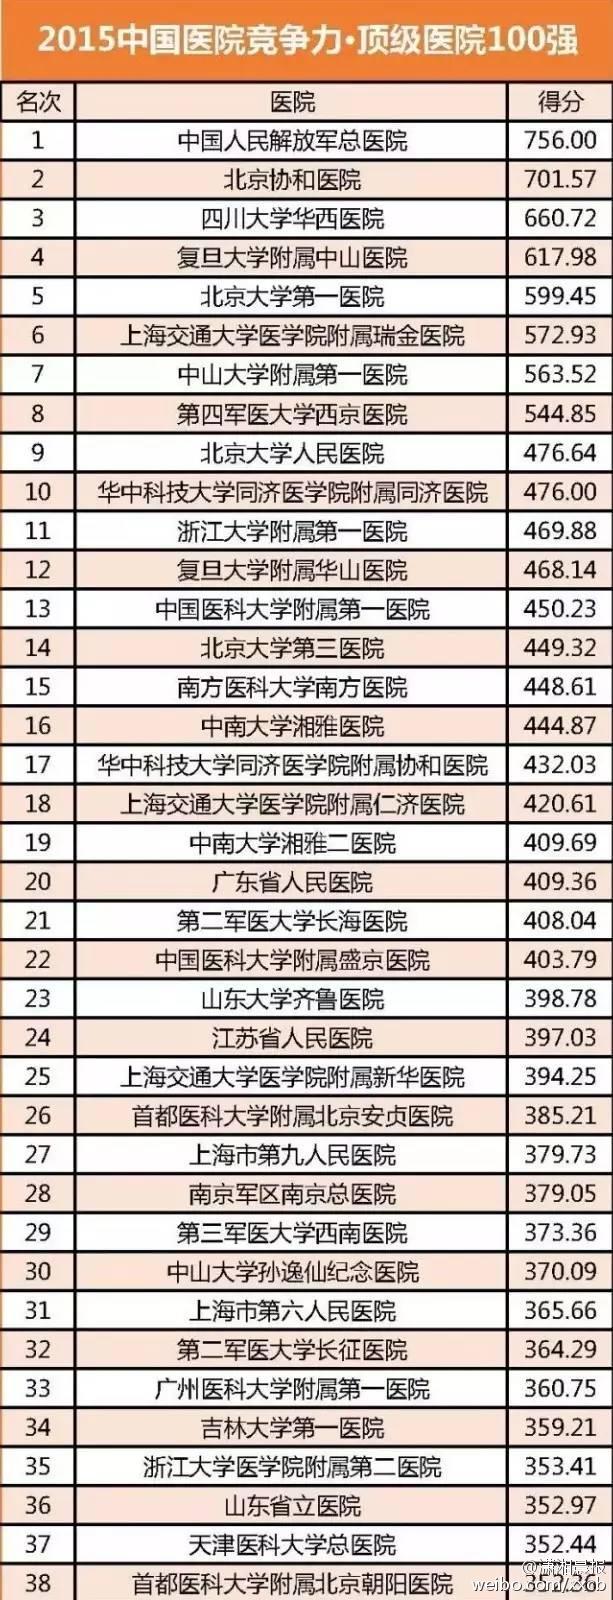 中国医院2015百强排行榜:北京、上海和广州最